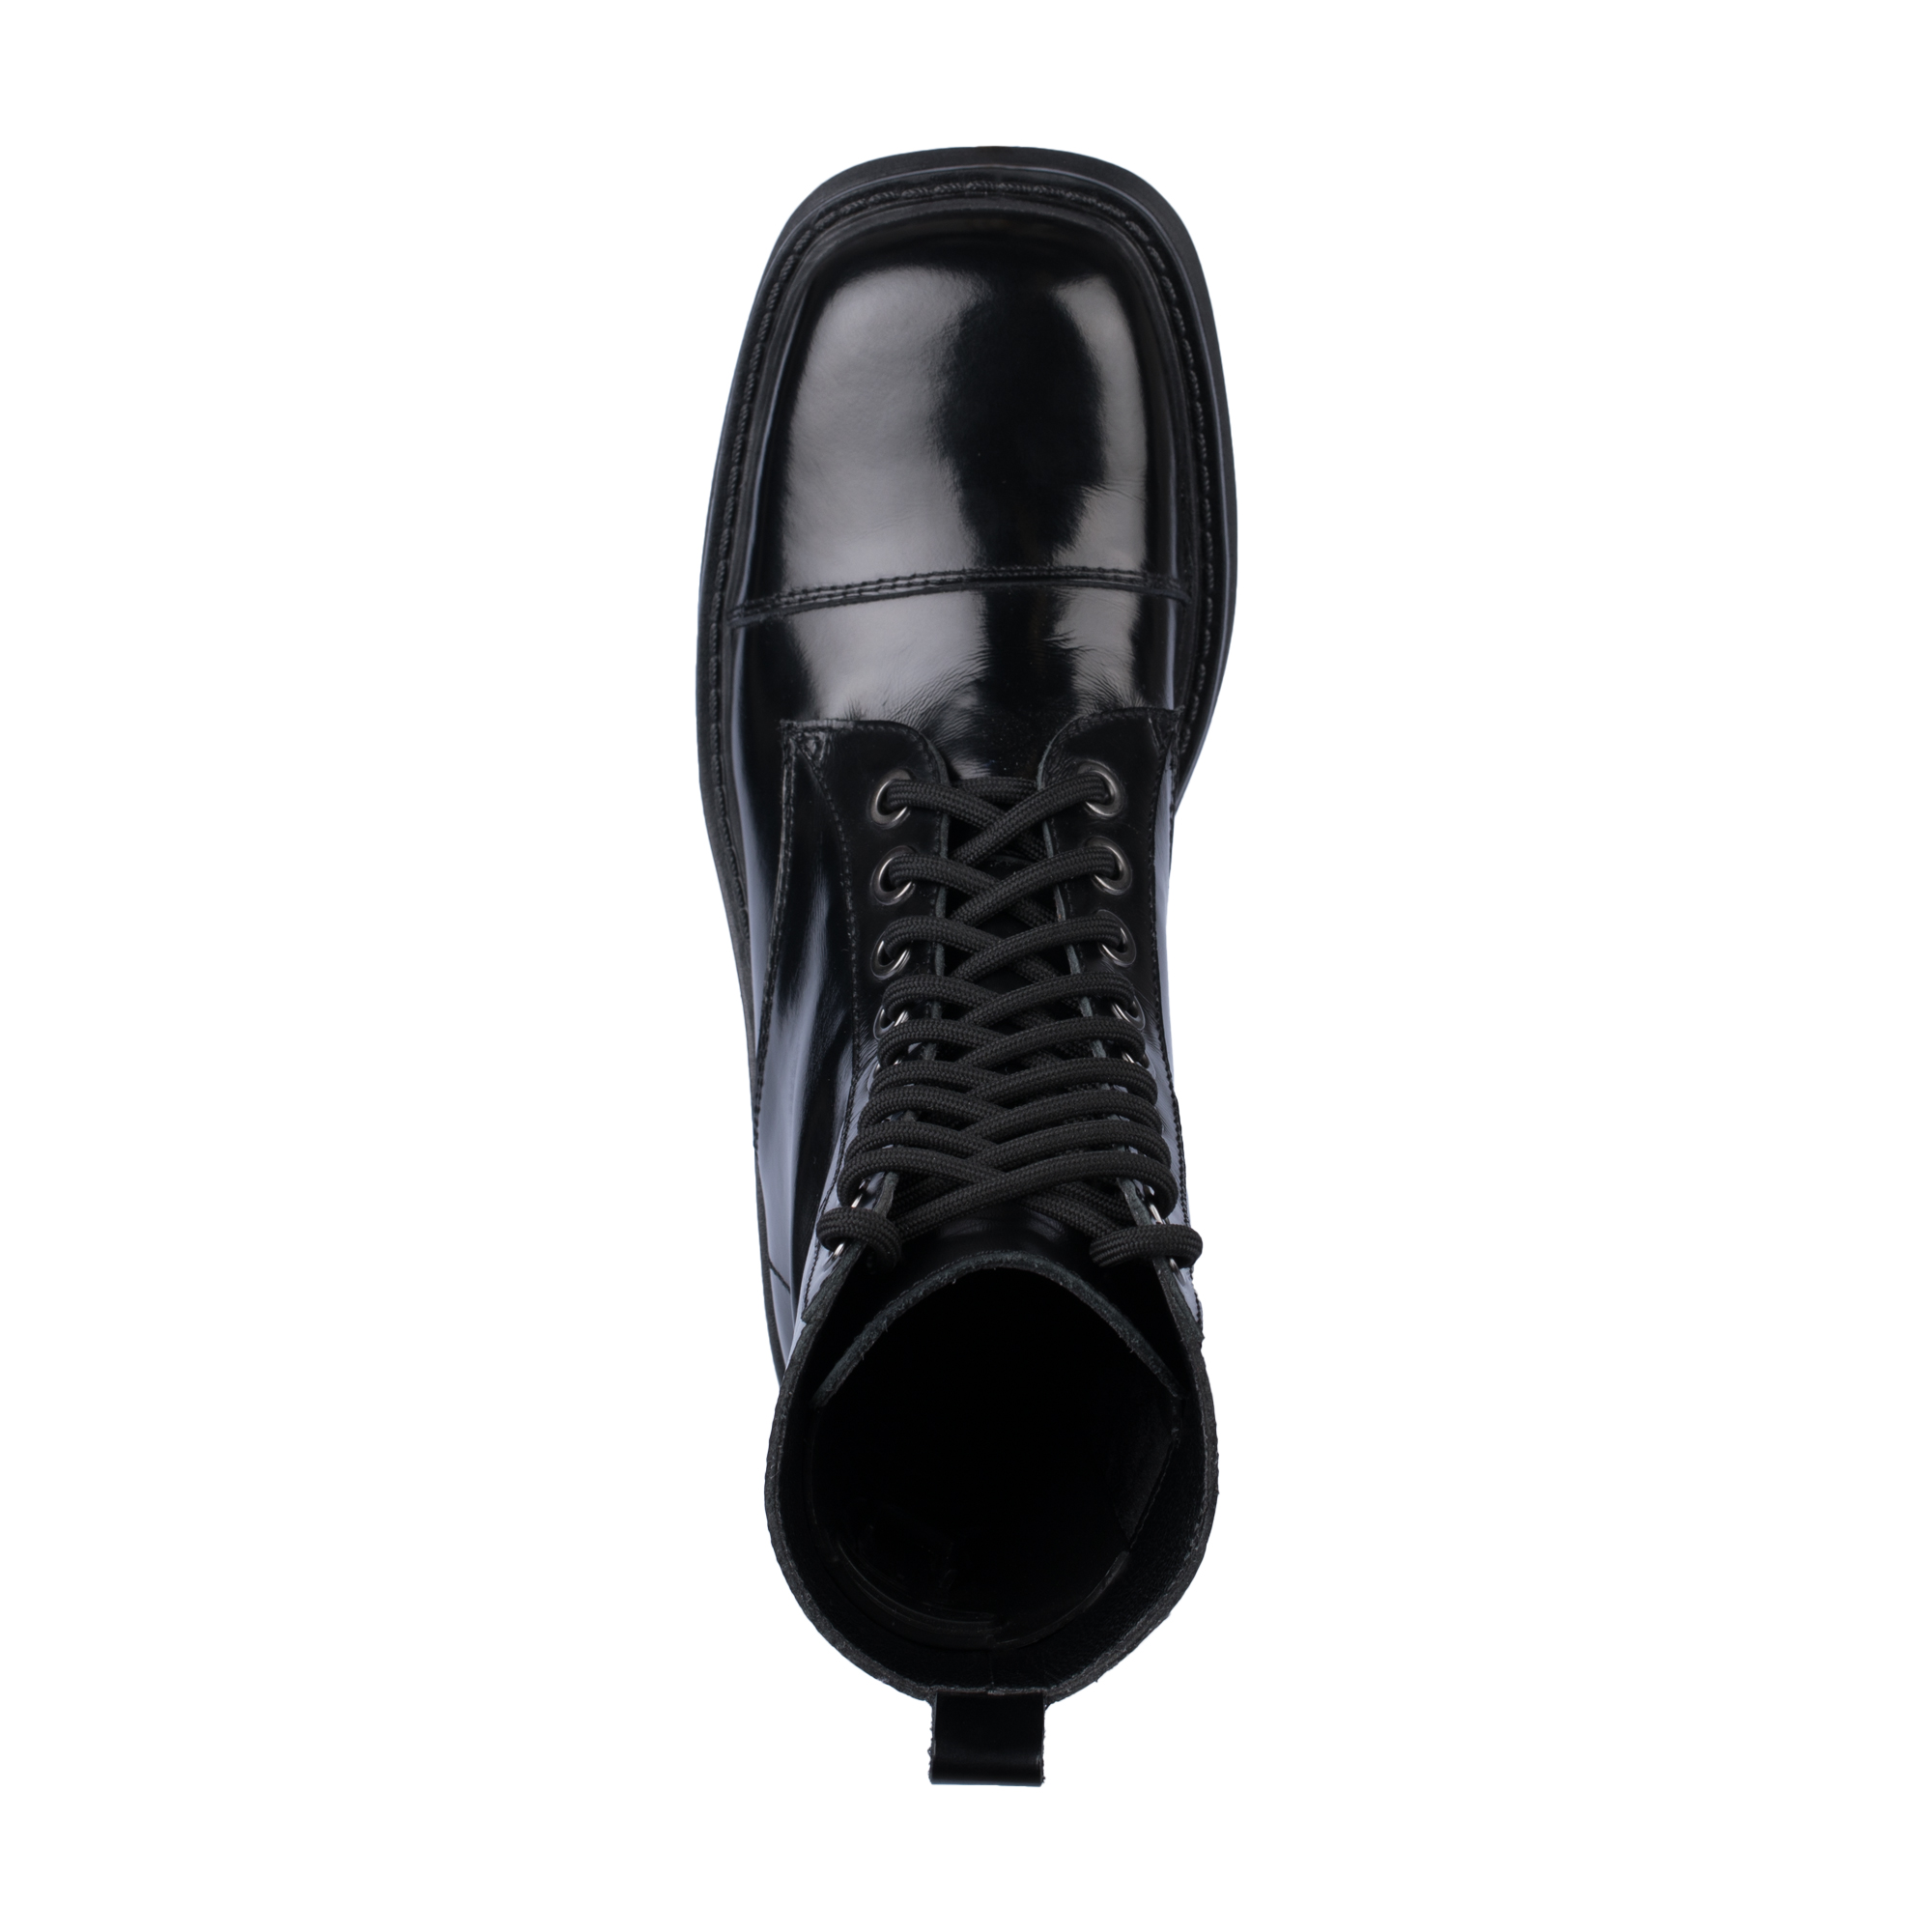 Ботинки Thomas Munz 126-400A-2102, цвет черный, размер 40 - фото 5